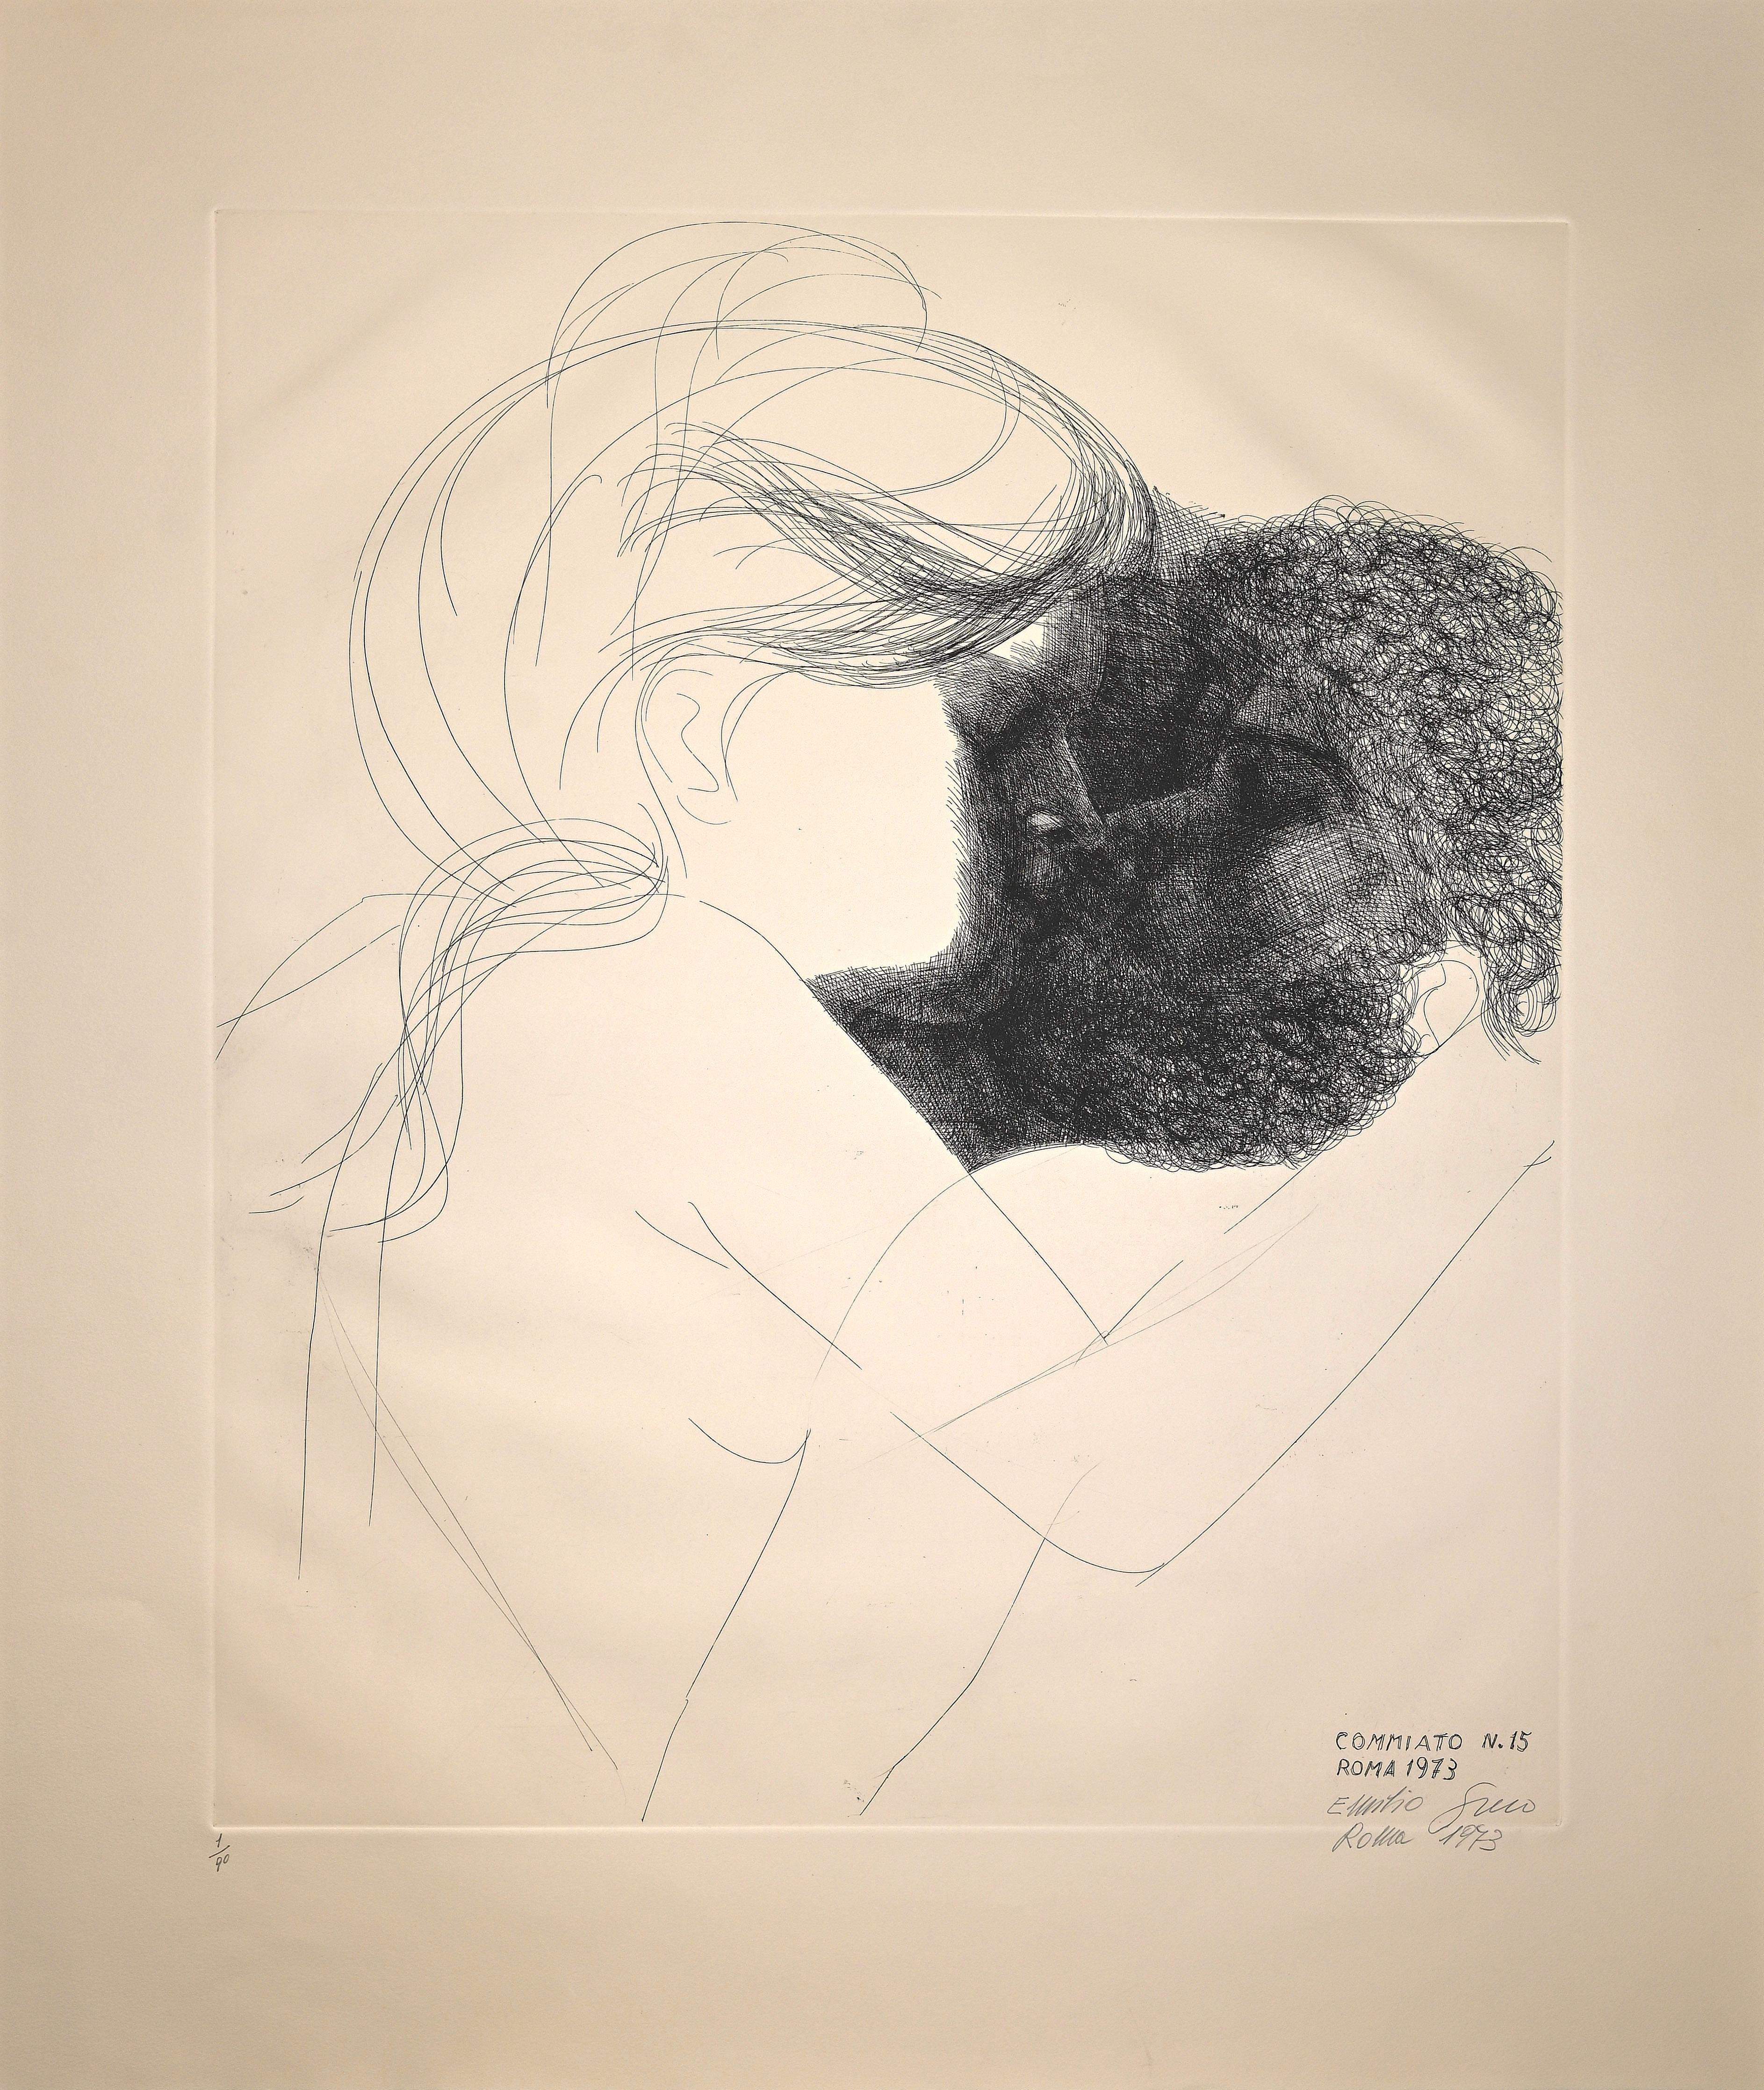 Figurative Print Emilio Greco - Commiato n° 15 (Farewell n° 15) - gravure d'E. Greco - 1973